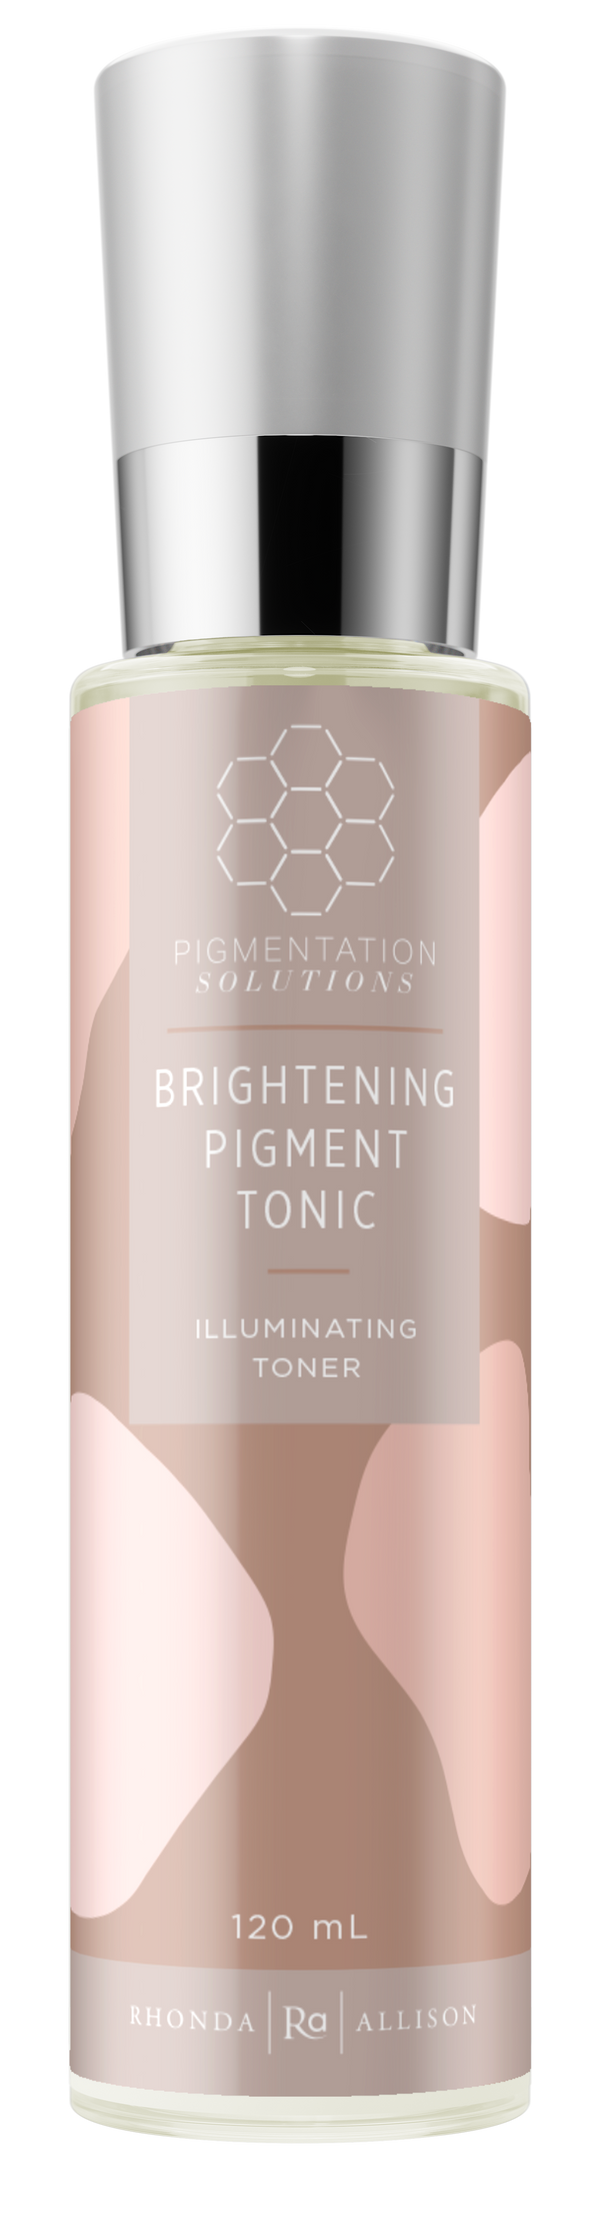 Brightening Pigment Tonic